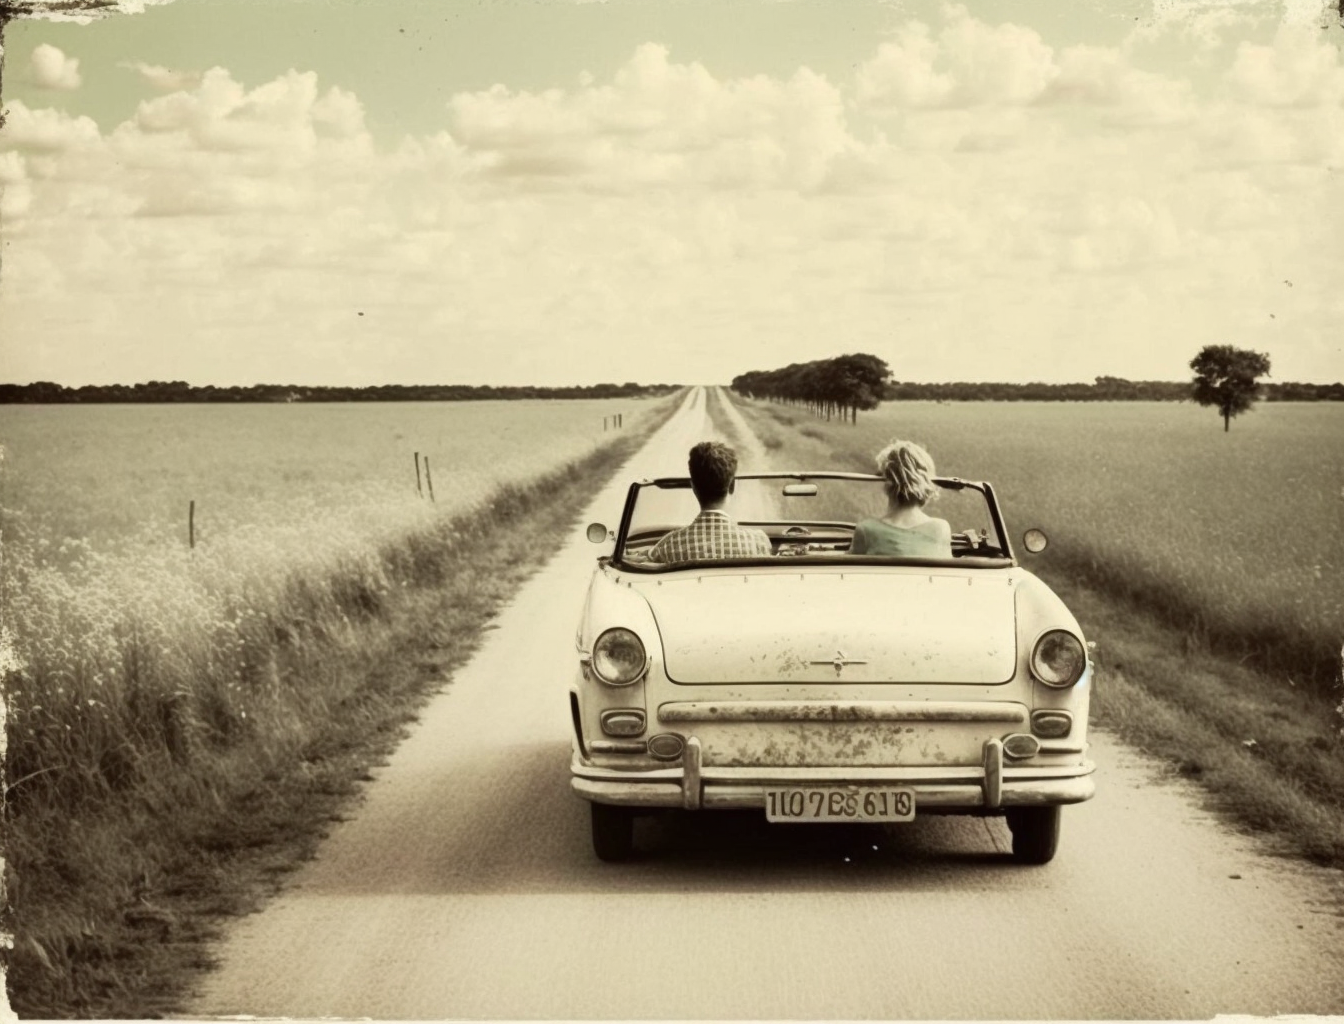 Svartvit (eller färgsvag) bild av en bil med ett par på en väg genom ett sädesfält. Bilden har en gammaldags känsla.